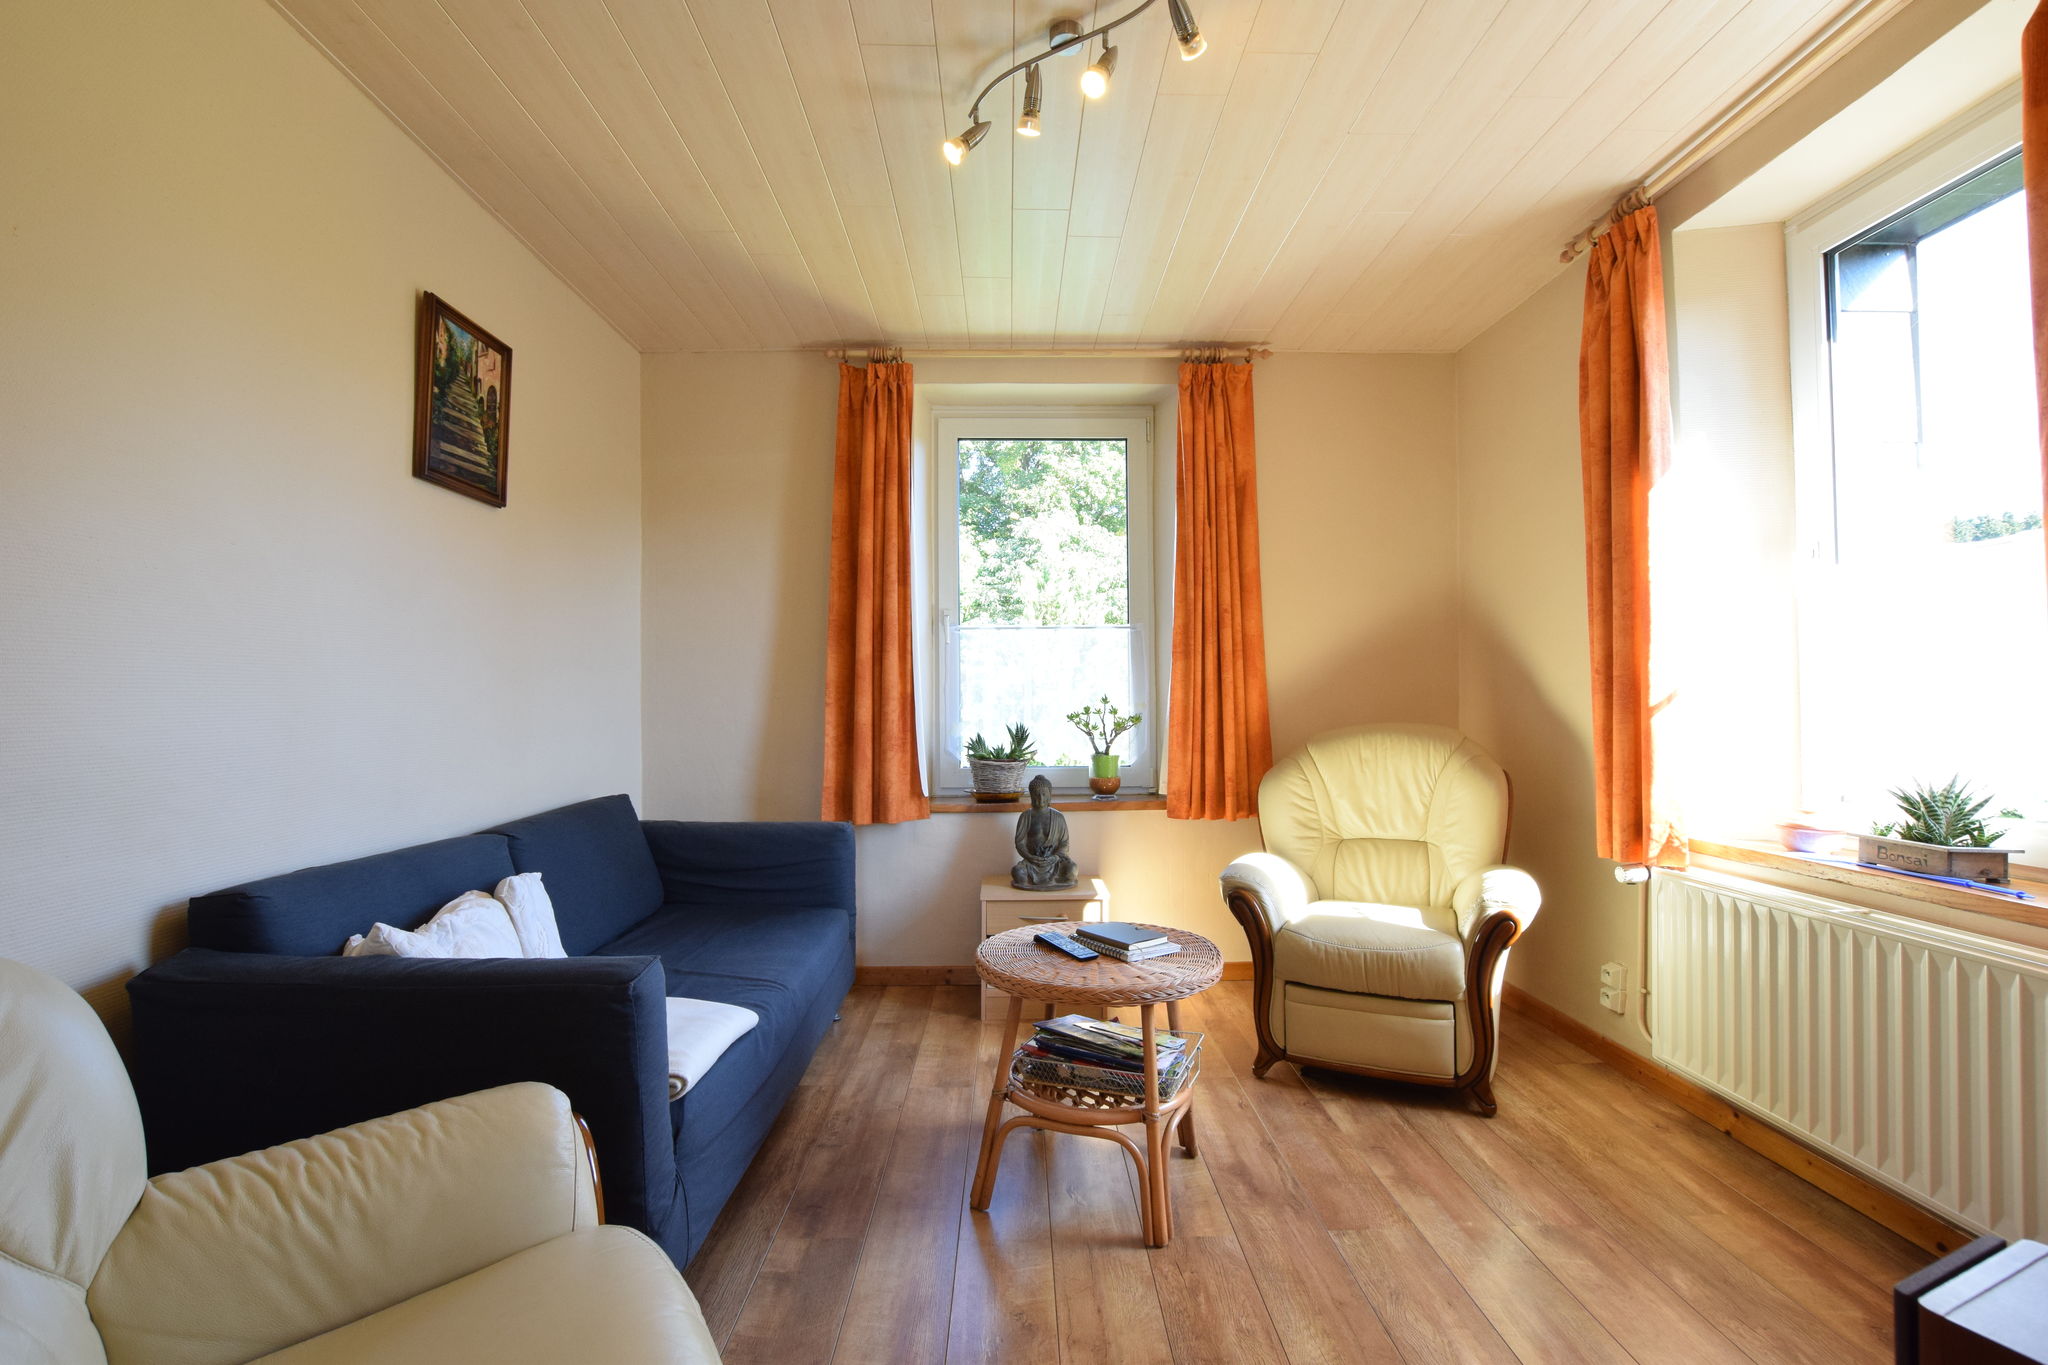 Maison de vacances confortable près de la forêt à Bovigny